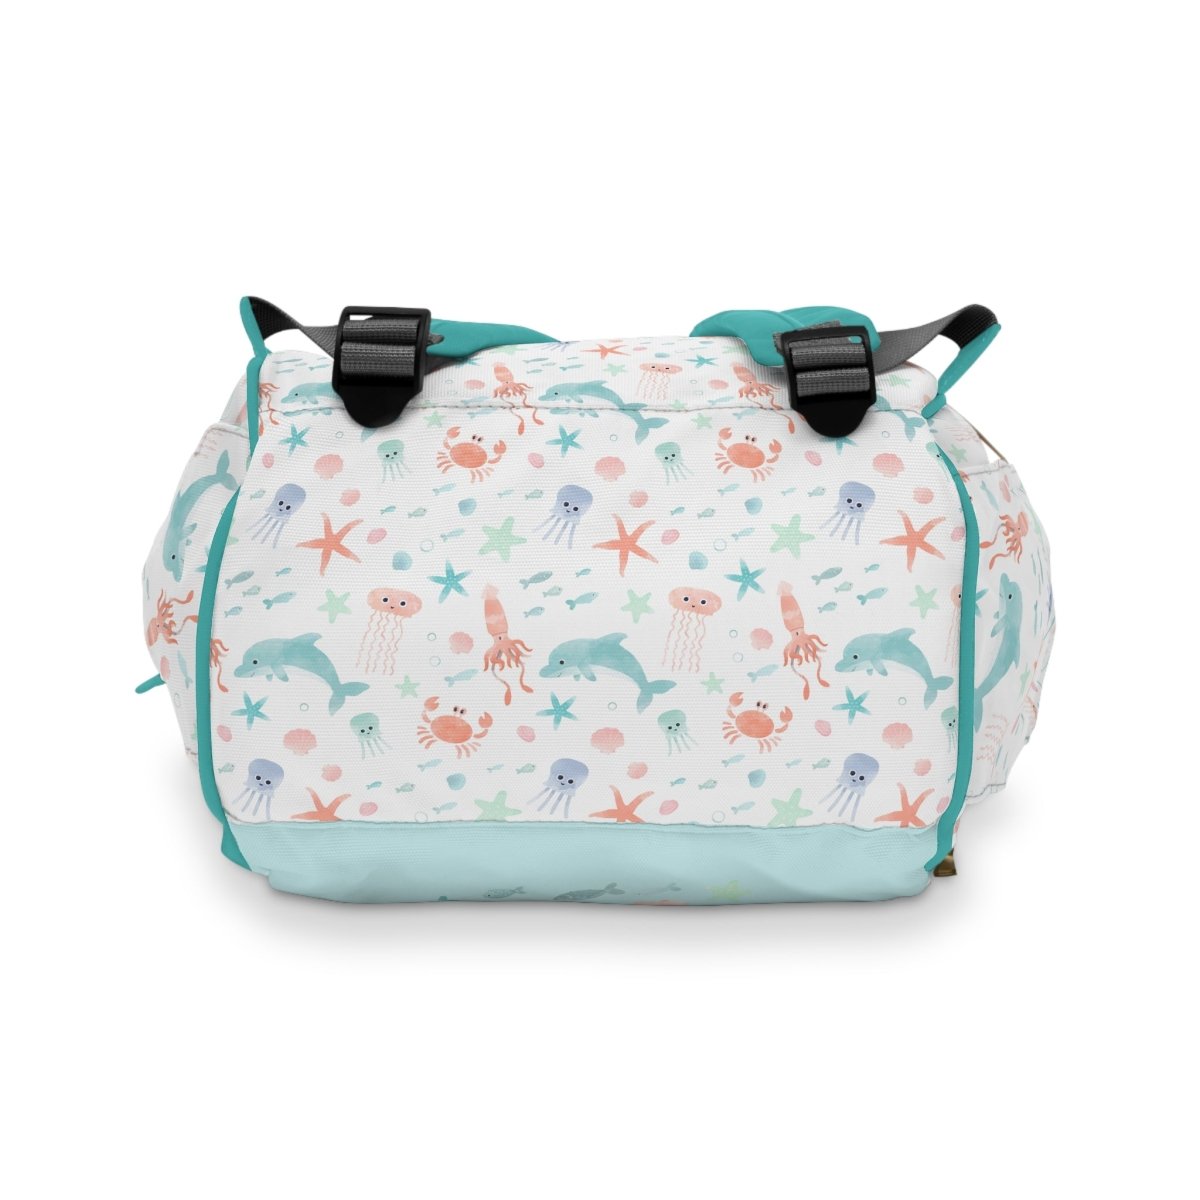 Under the Sea Personalized Backpack Diaper Bag - gender_boy, gender_girl, gender_neutral